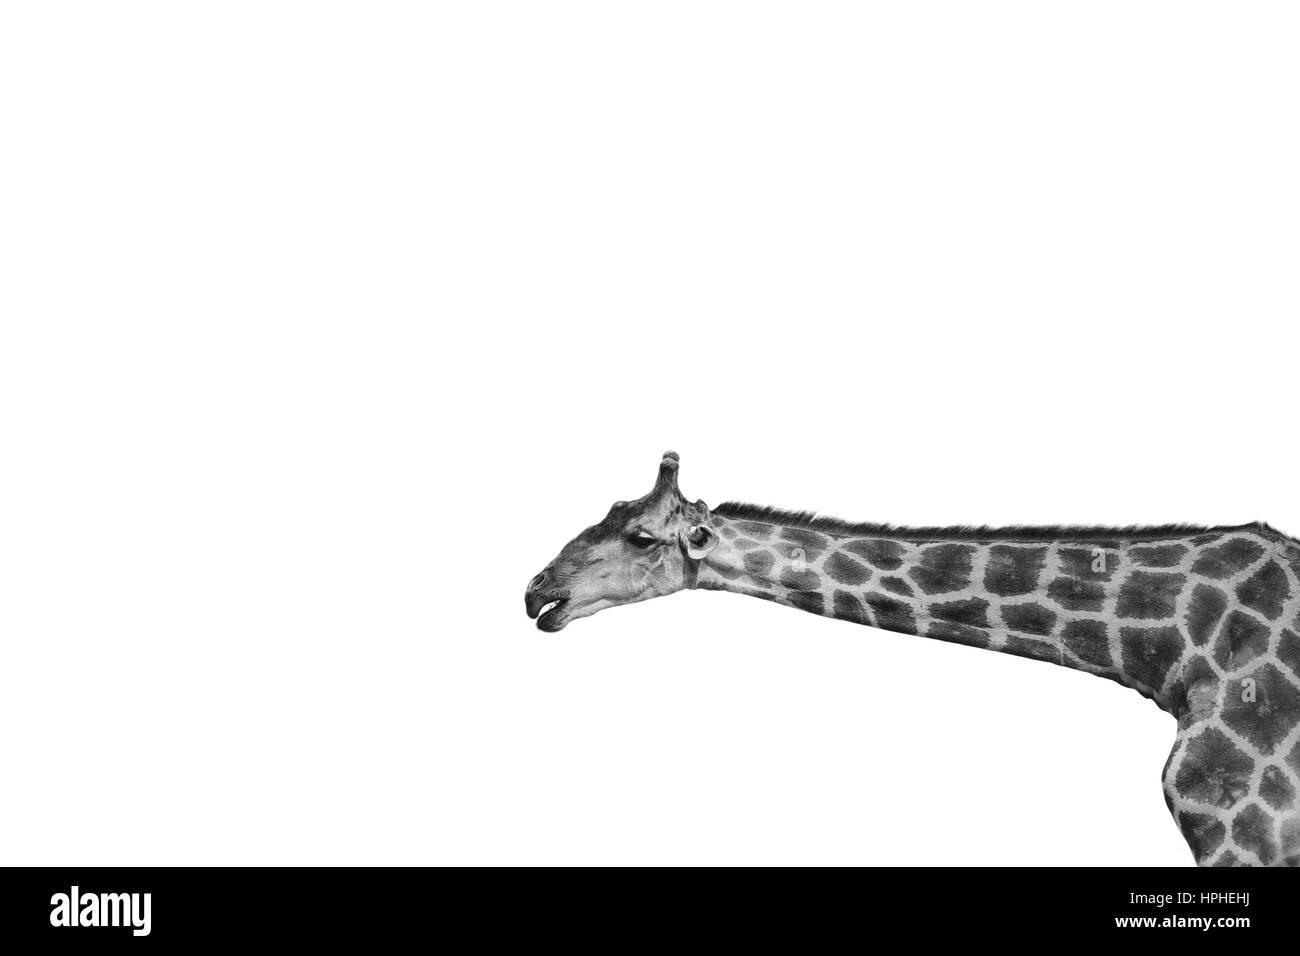 Portrait de girafe sur fond blanc en noir et blanc Banque D'Images